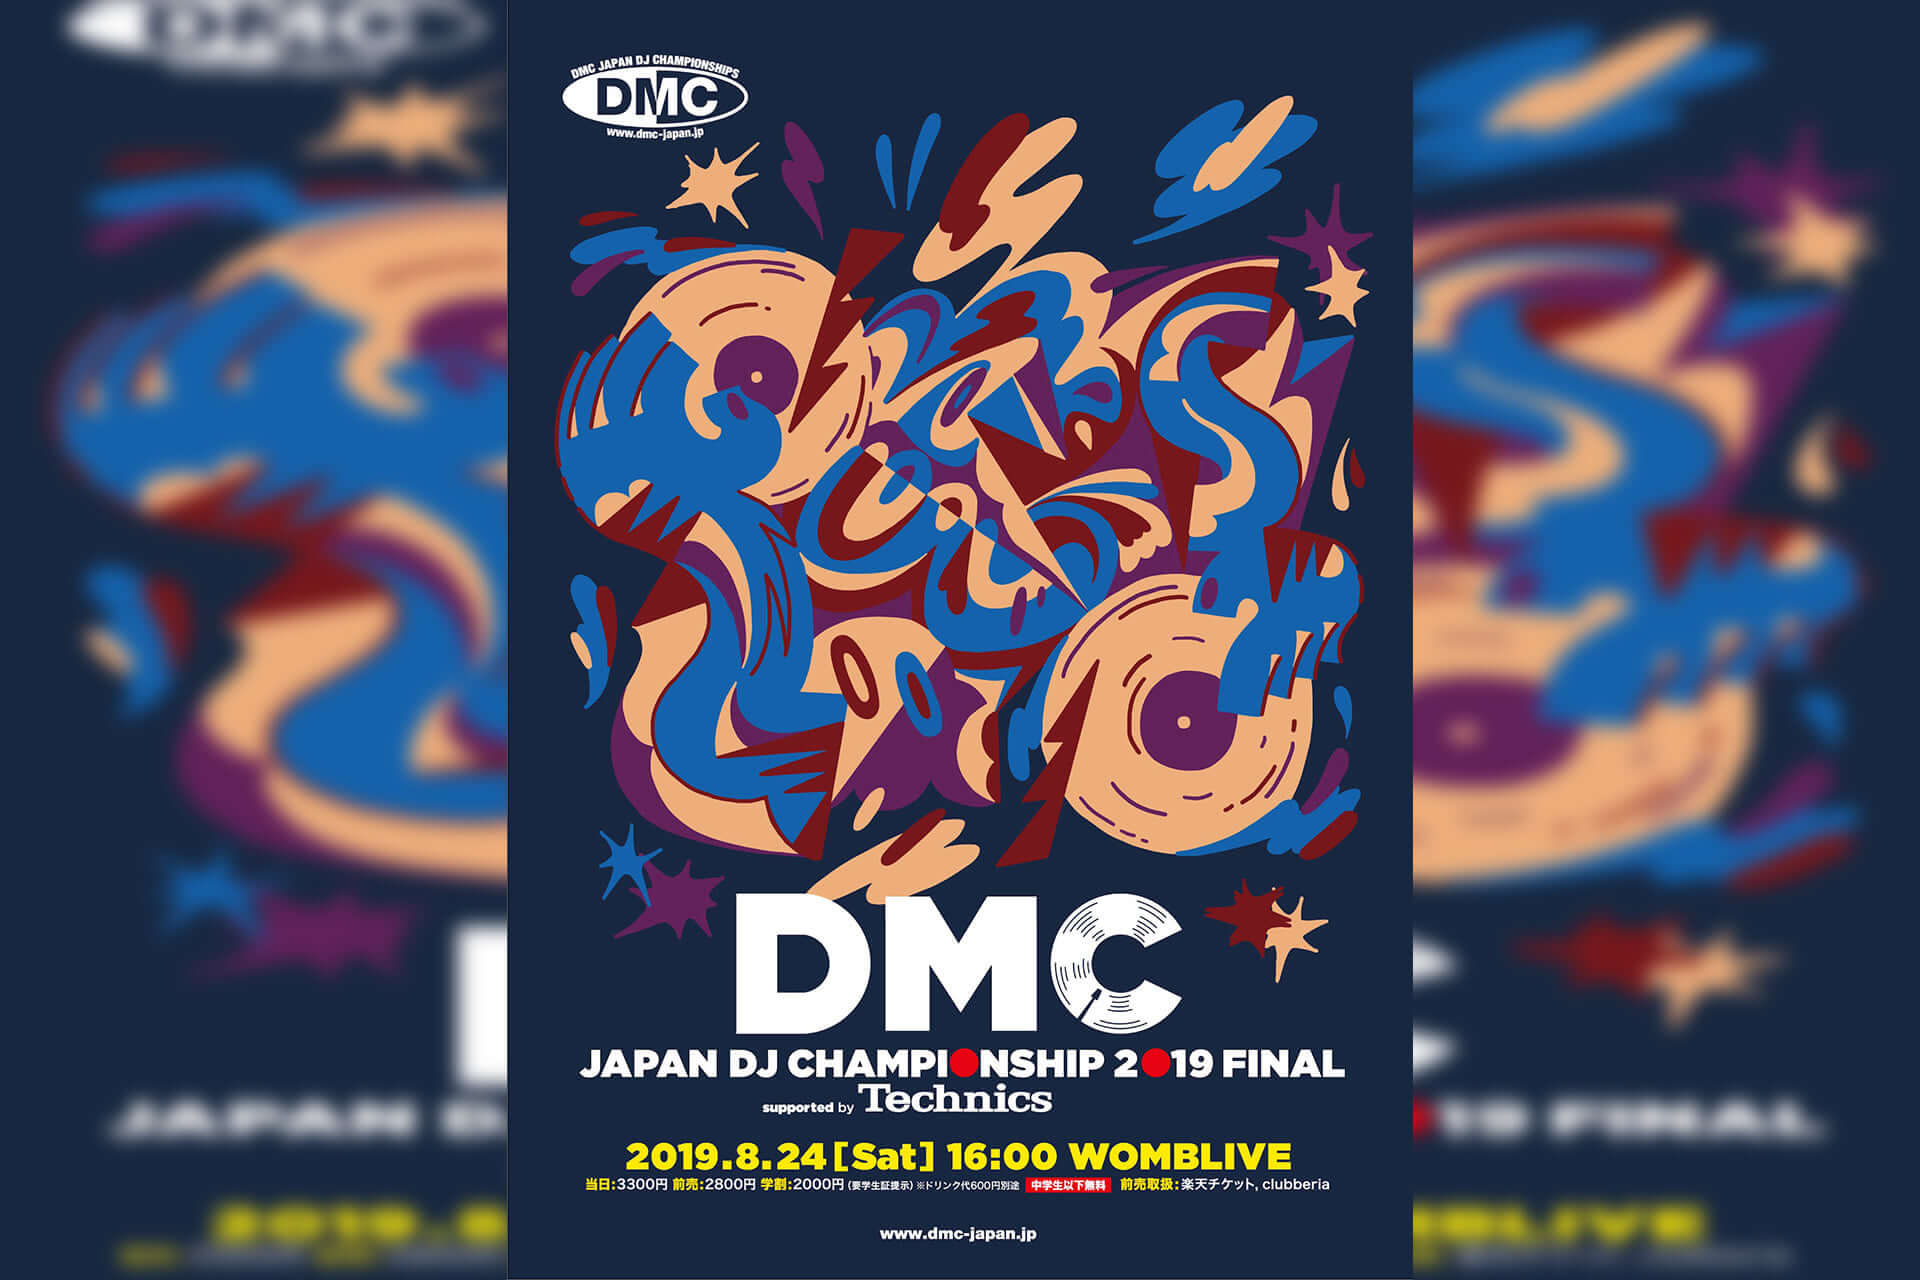 【正規通販】 世界一のDJを決める最も権威のあるDJの大会DMC WORLD DJ CHAMPIONSHIP FINALS 2017 V.A DMC learnrealjapanese.com